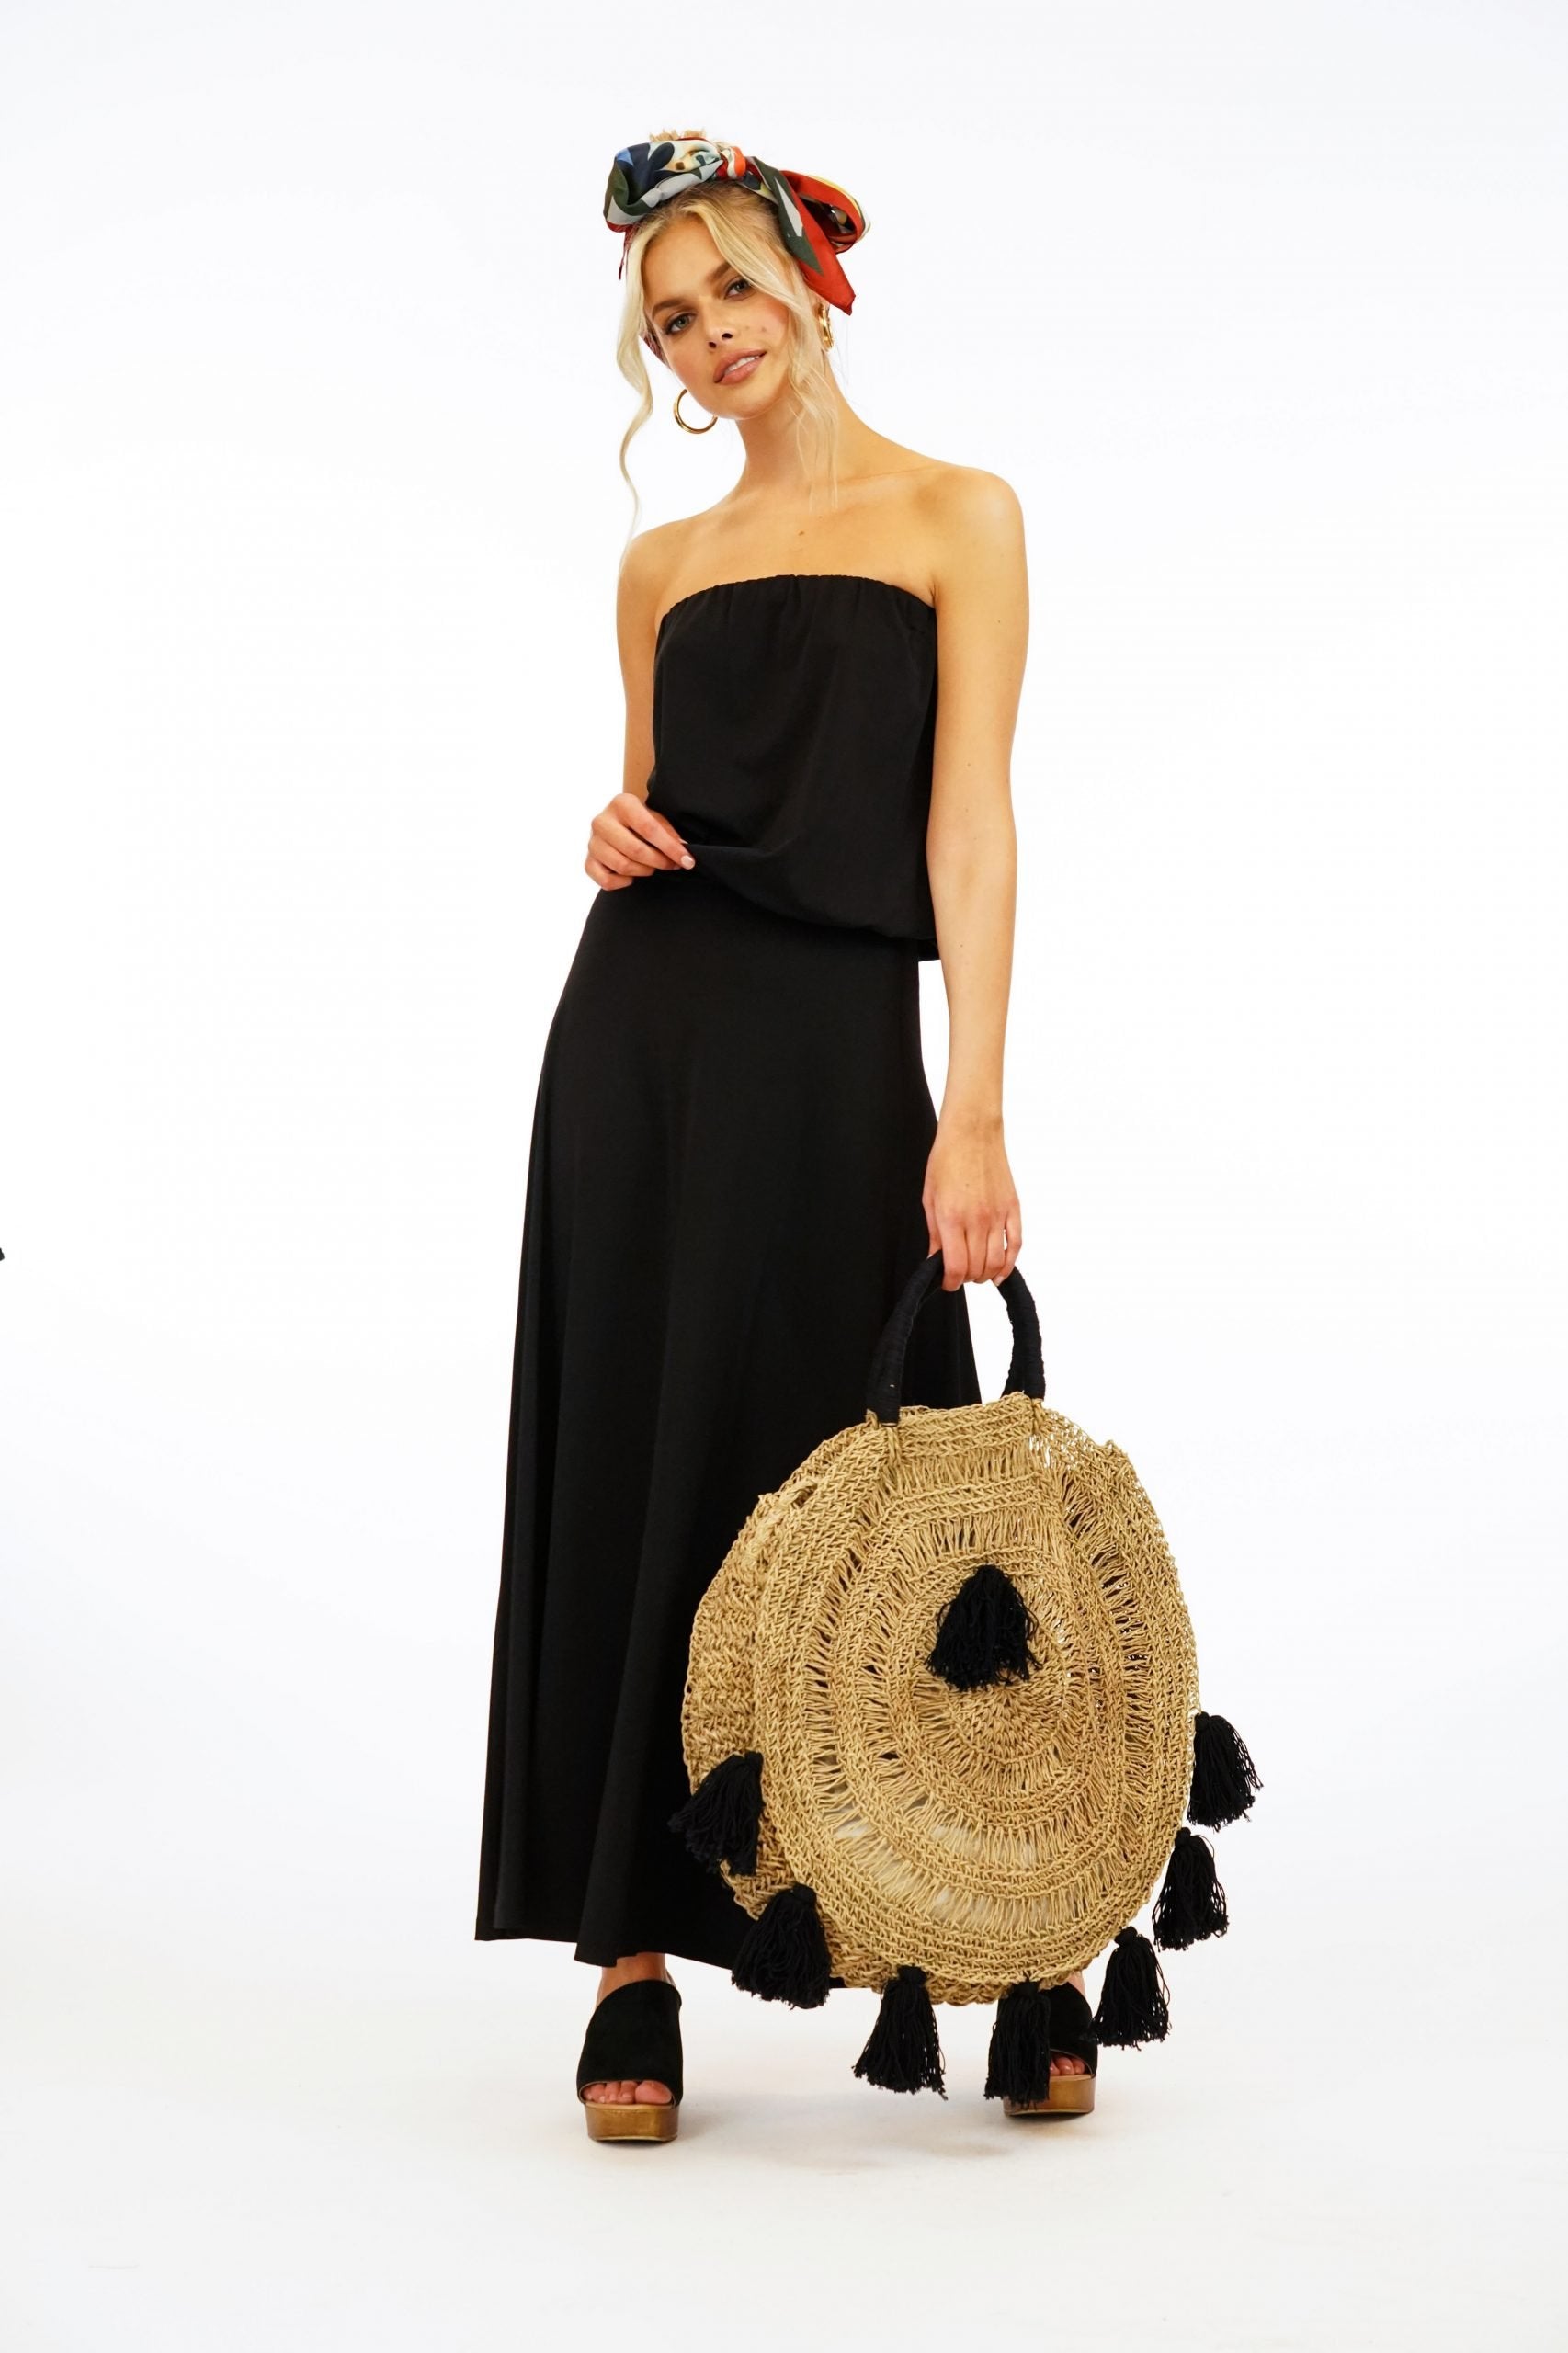 Black Strapless Maxi Dress-BEST SELLER